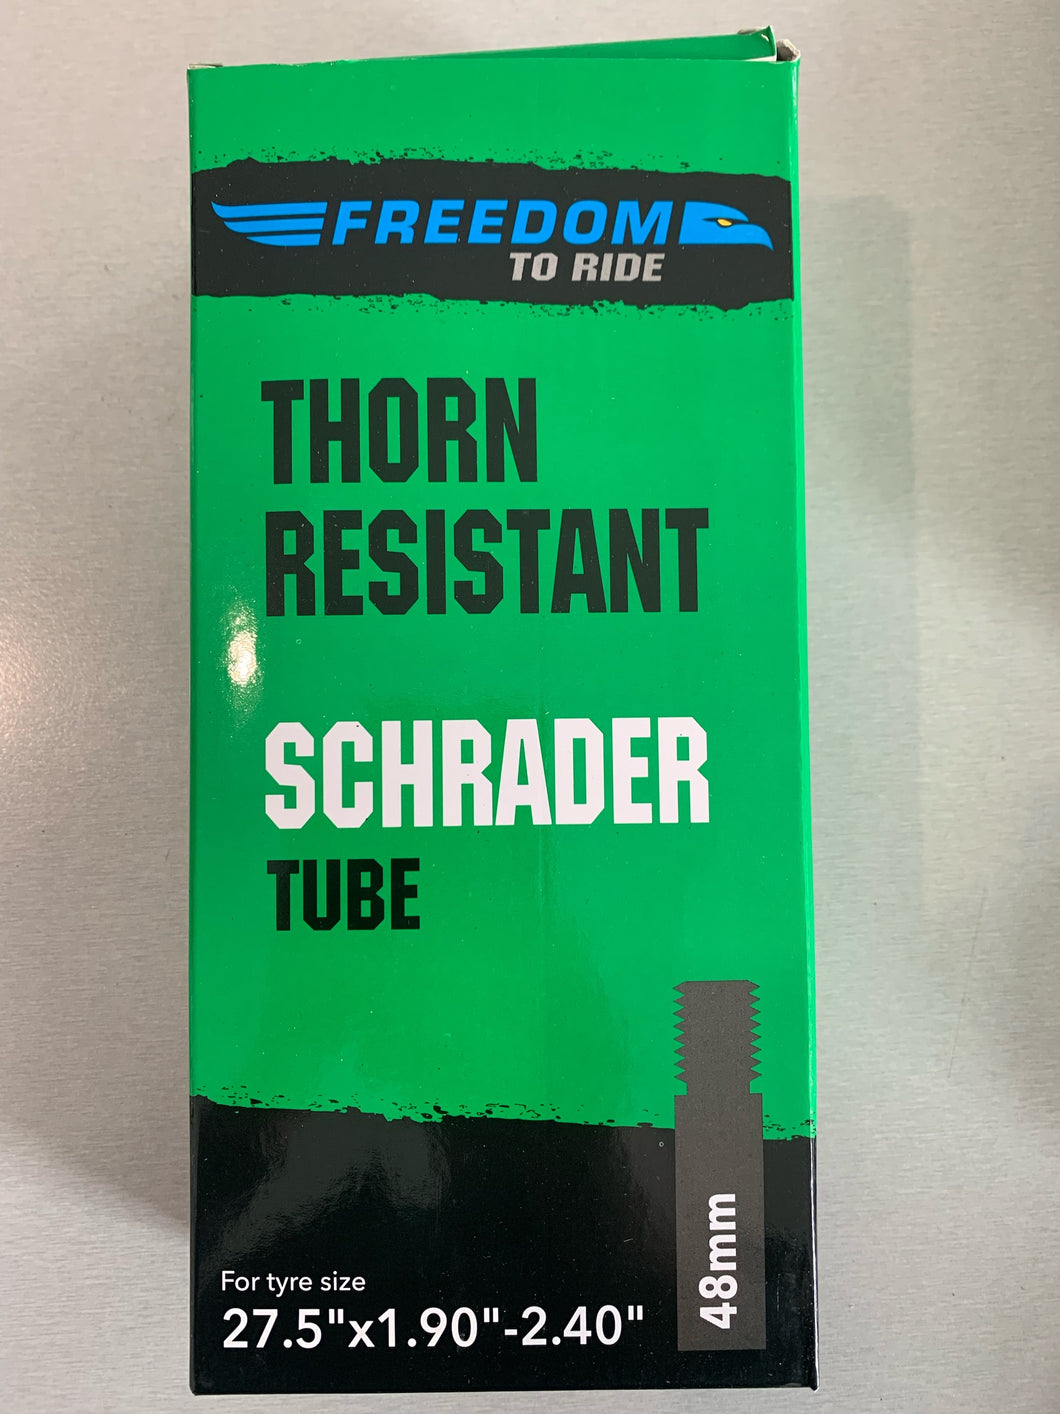 Tube - Thorn Resistant Schrader 27.5